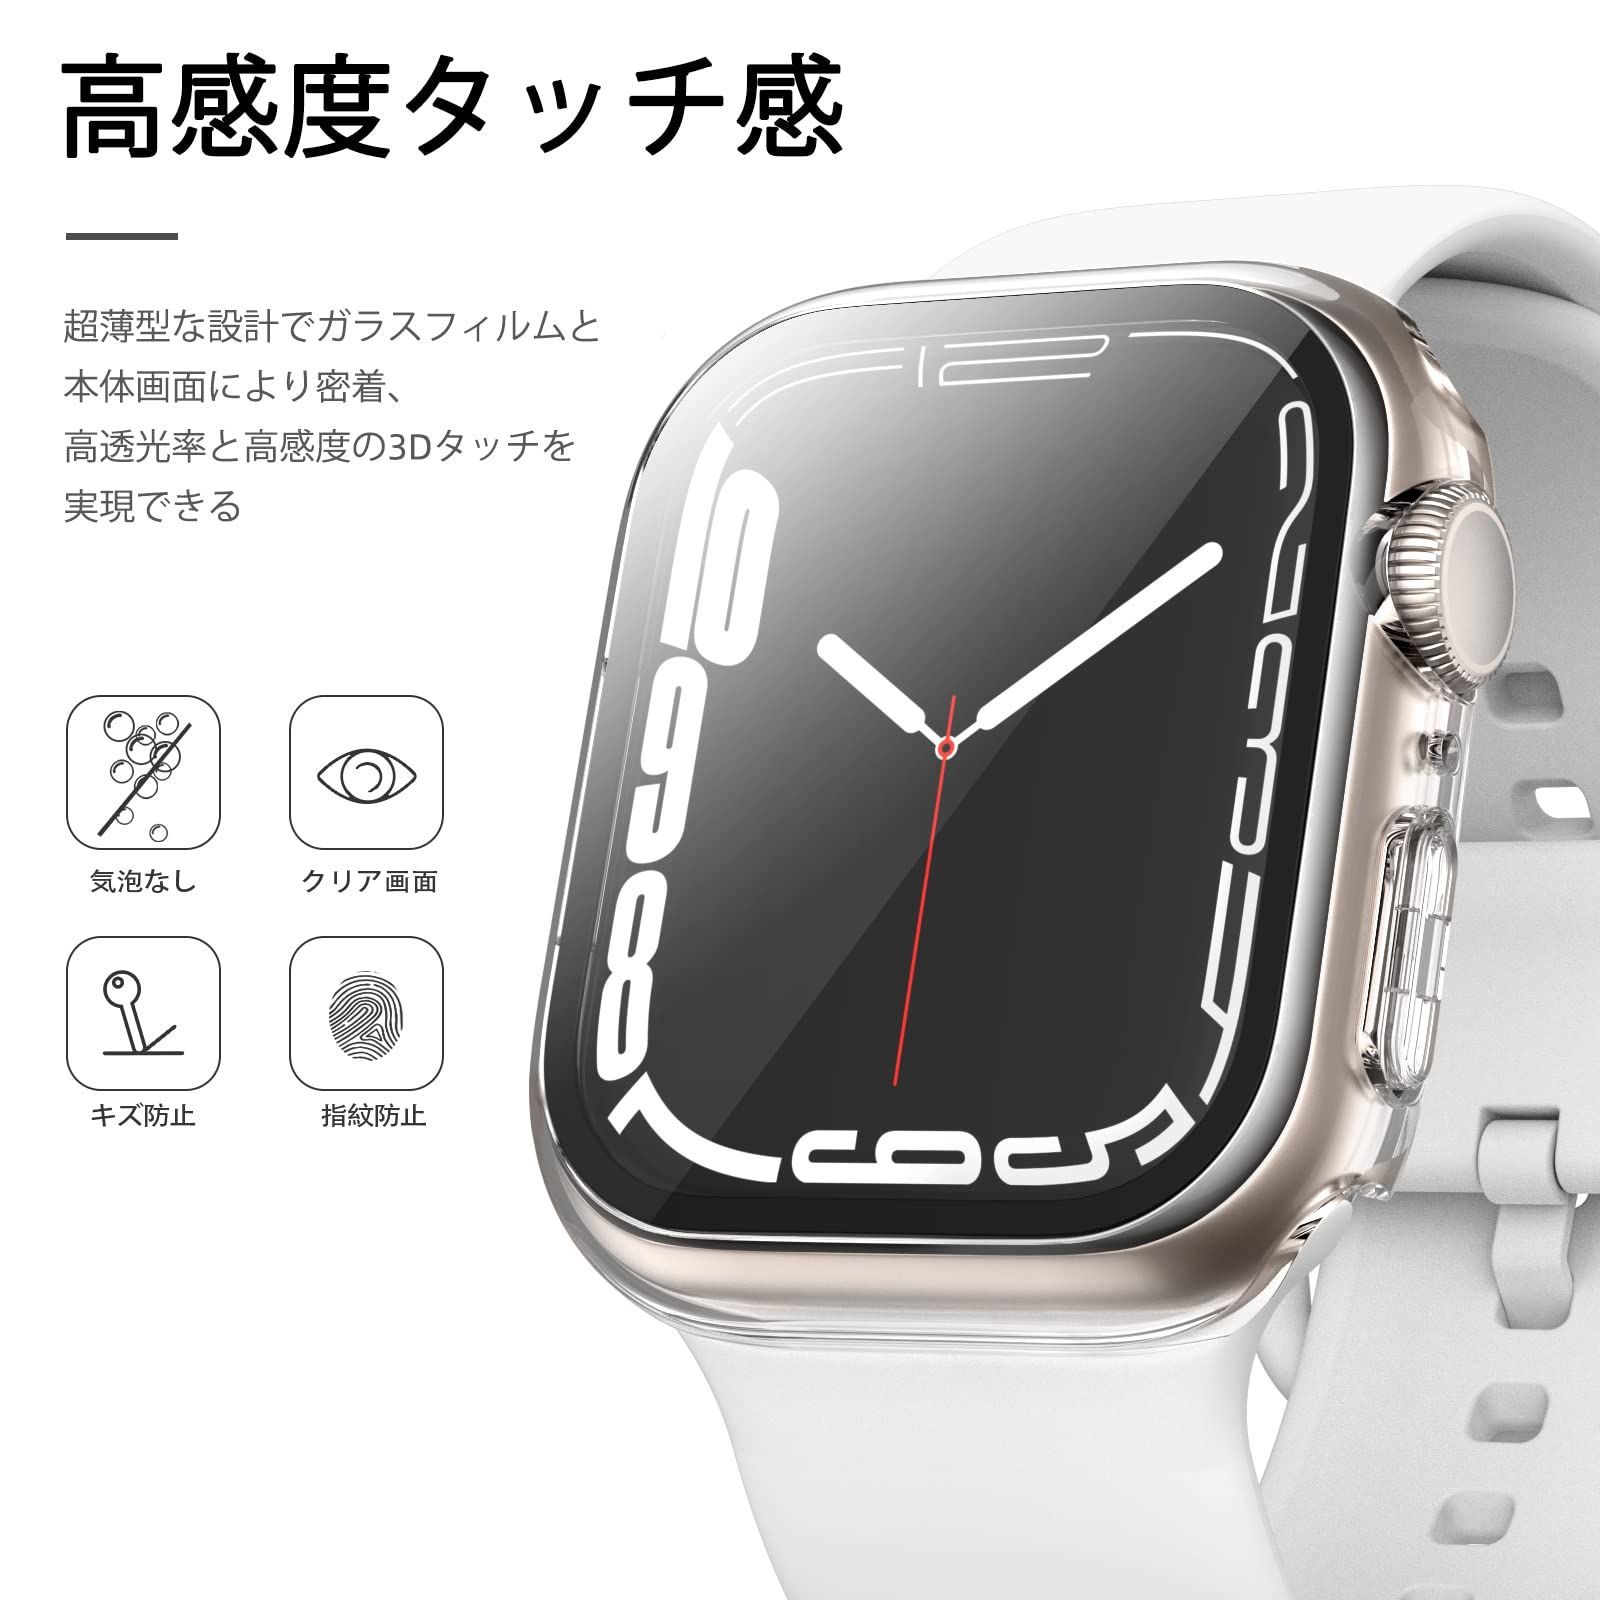 新着商品】【3枚セット】Zebaco コンパチブル Apple Watch ケース 41mm